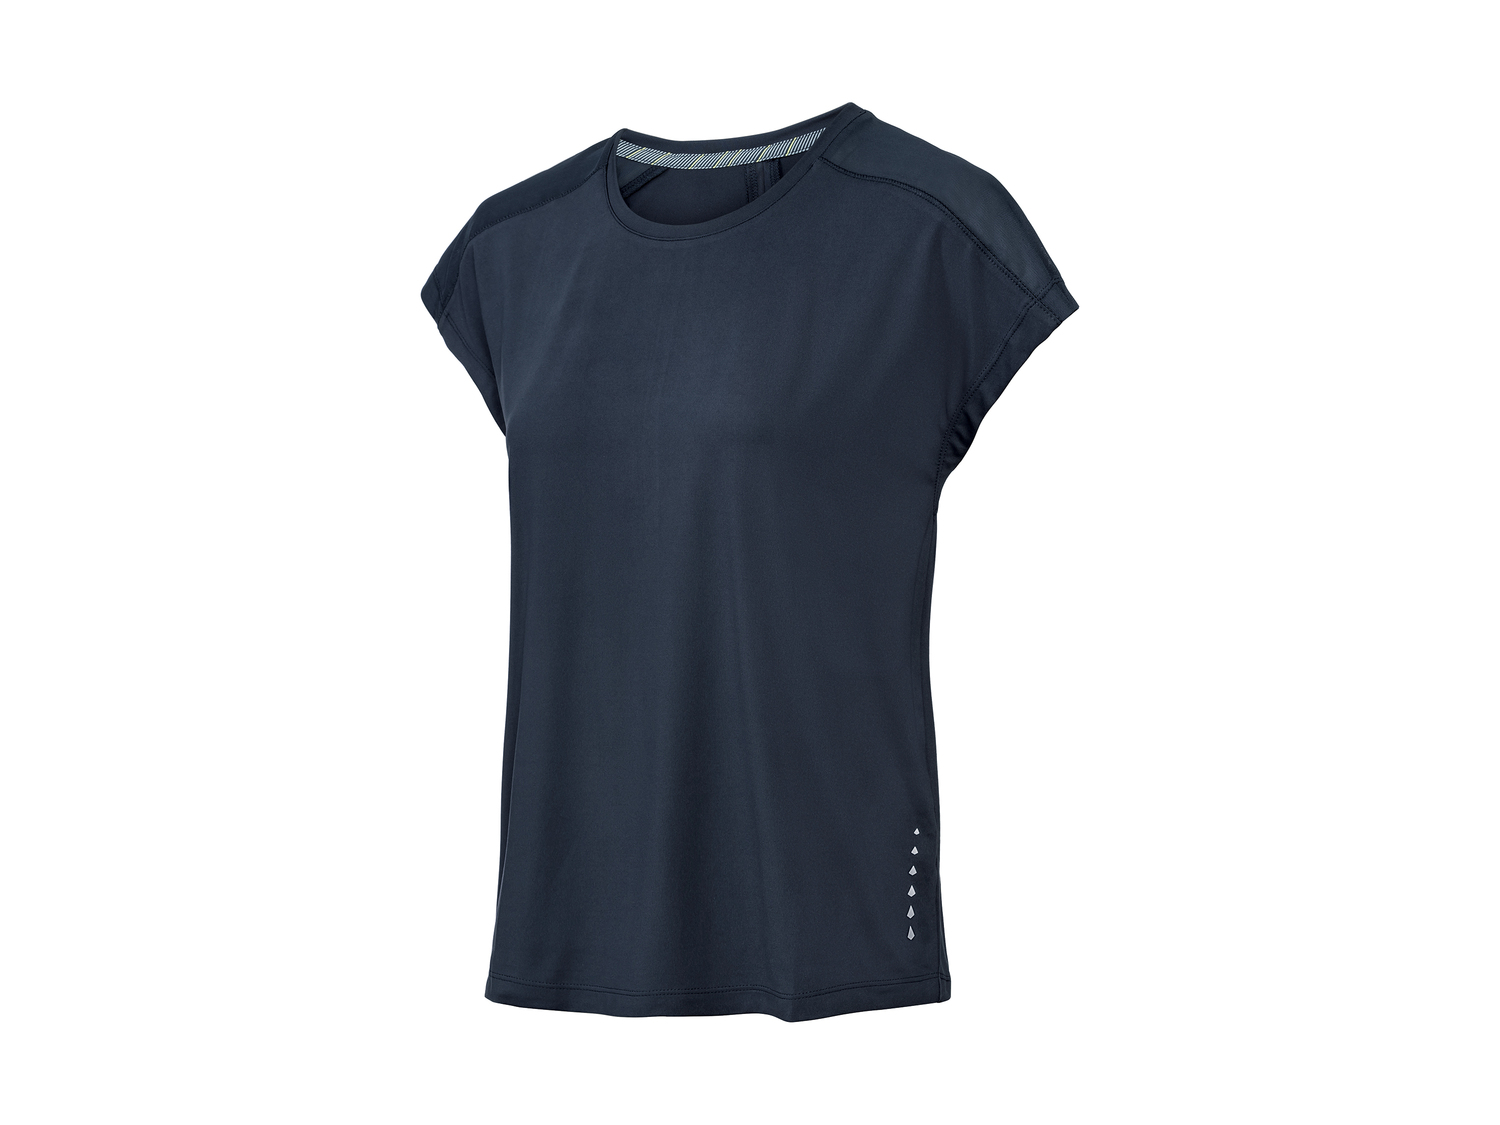 T-shirt technique femme , le prix 4.99 € 
- Du S au L selon modèle.
- Ex. 91 ...